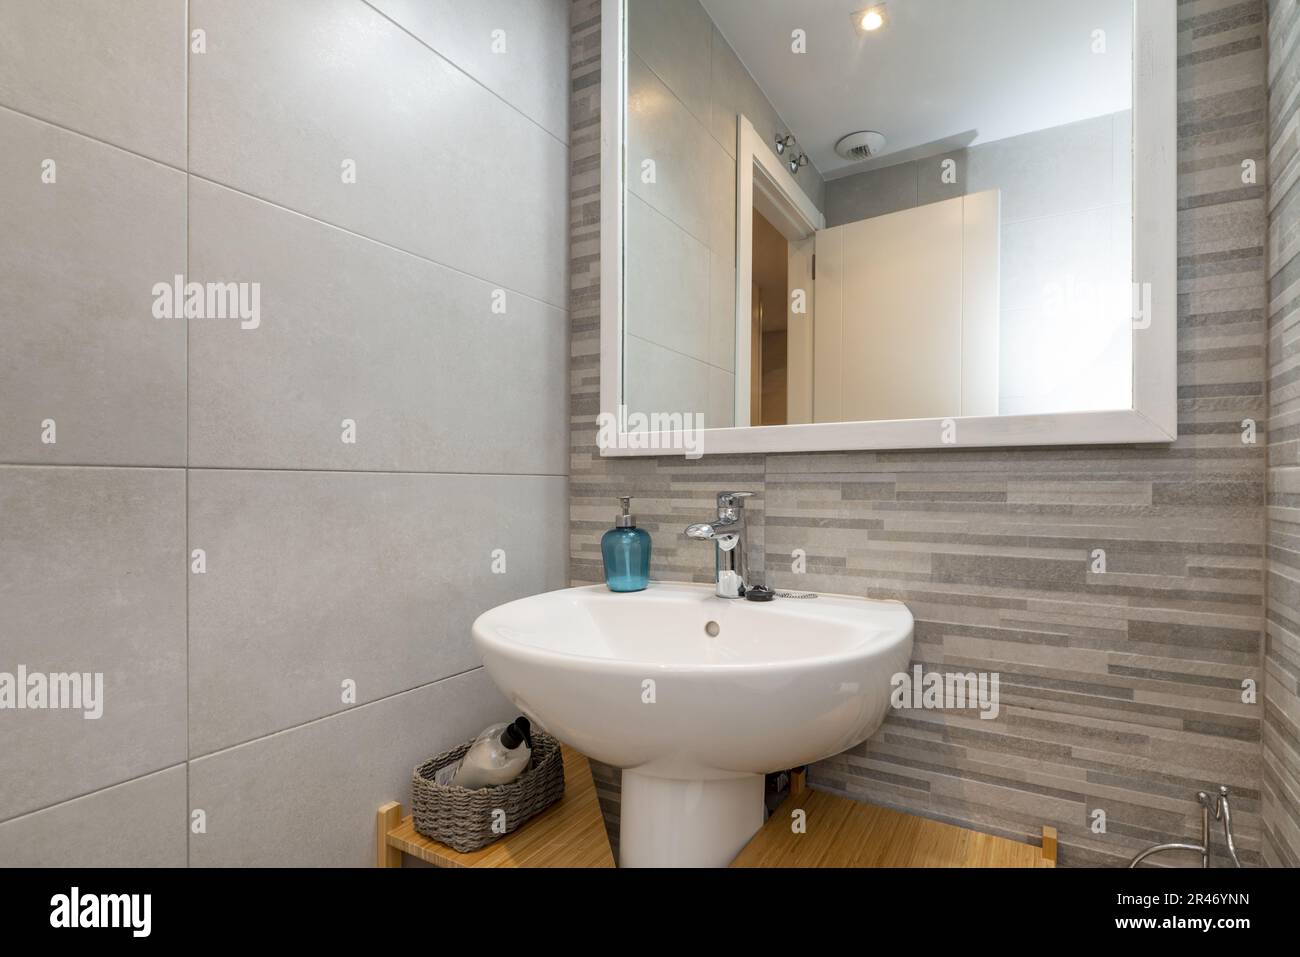 Un lavabo in porcellana bianca in un piccolo bagno con uno specchio quadrato con cornice in legno bianco e pareti piastrellate miste Foto Stock